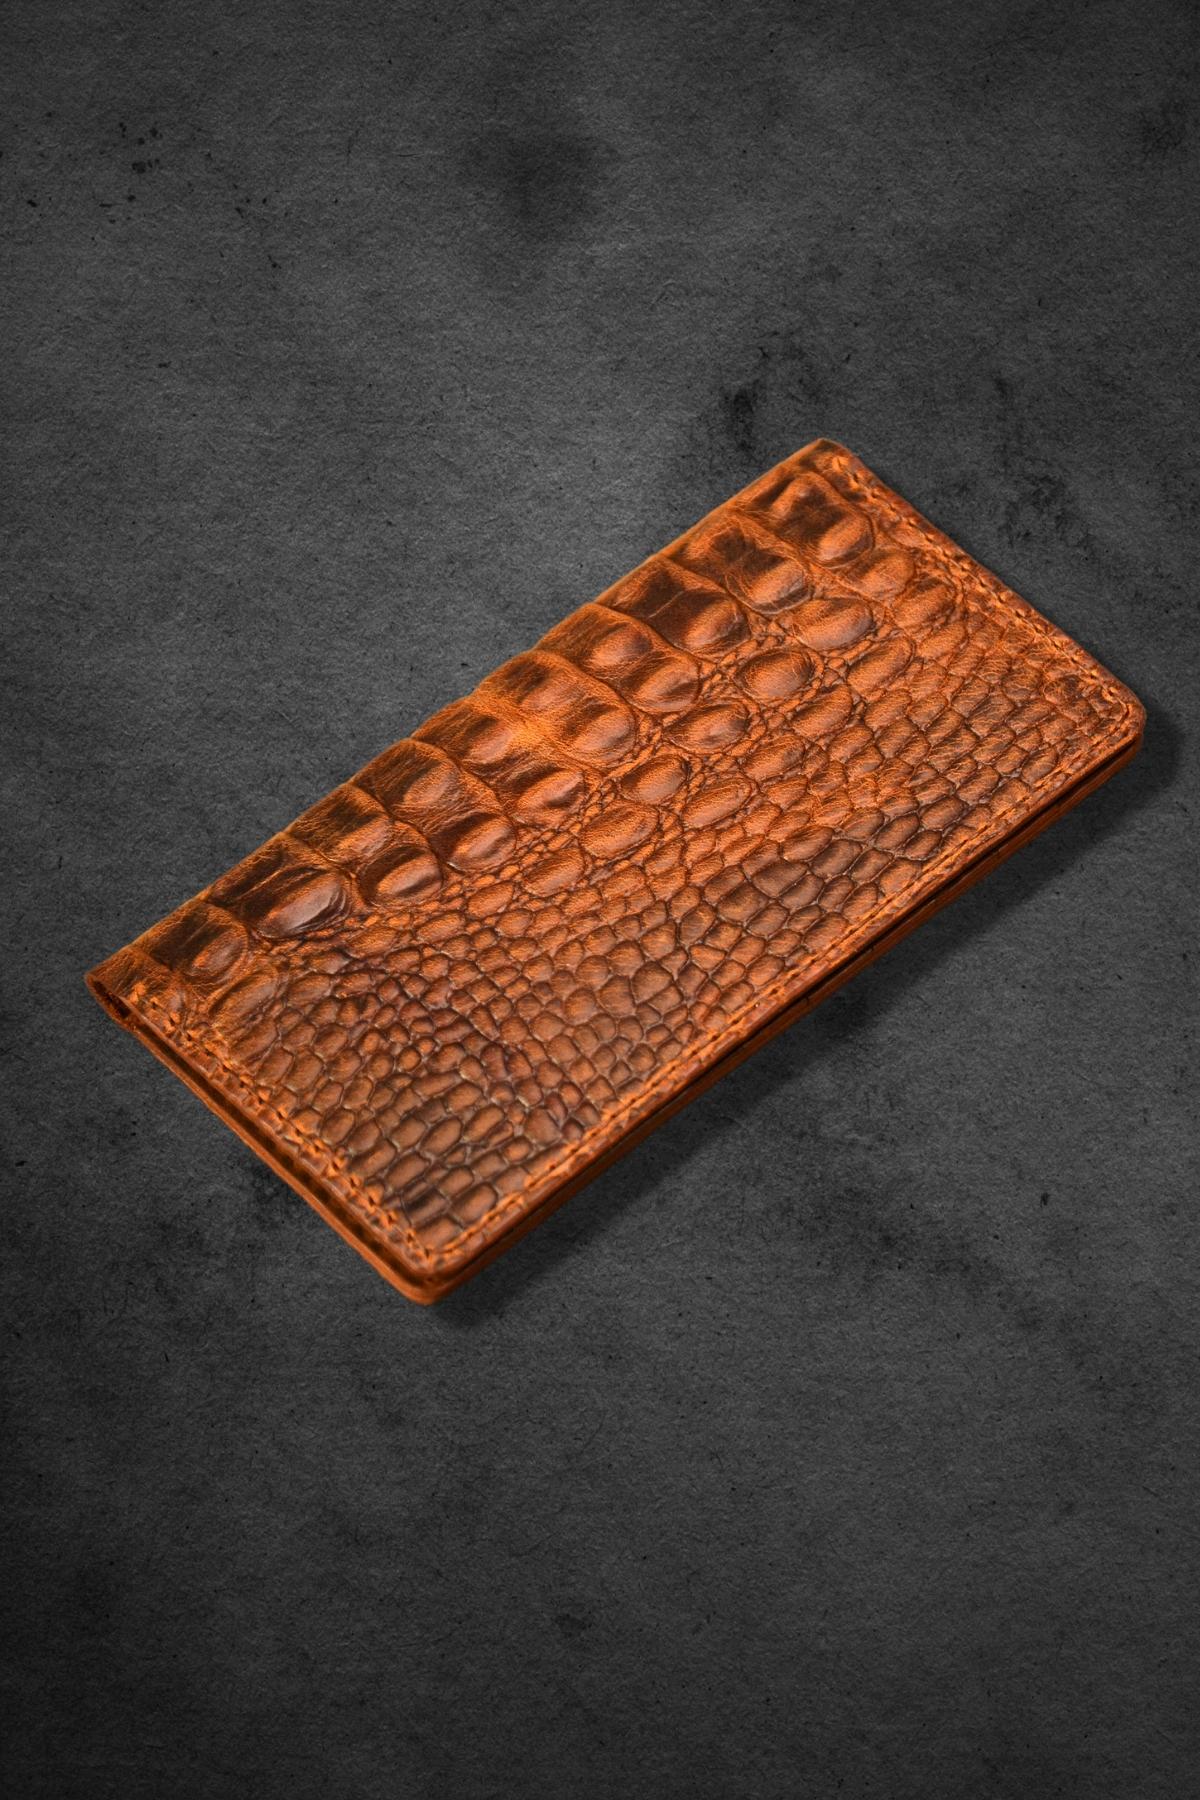 Antik deri telefon cüzdanı (timsah baskılı)